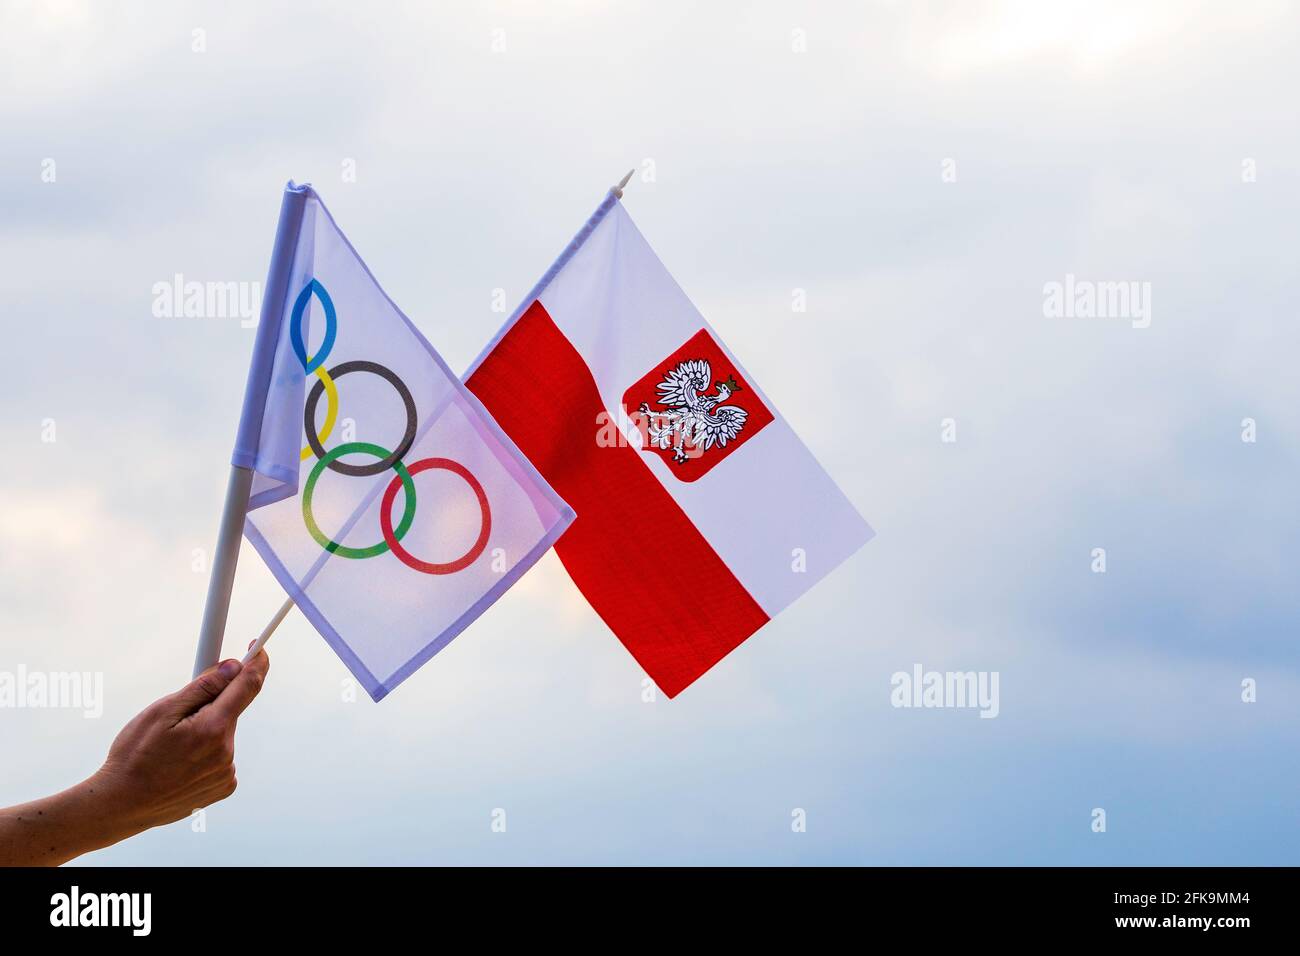 Fan signe le drapeau national de la Pologne et le drapeau olympique avec le symbole anneaux olympiques. Banque D'Images